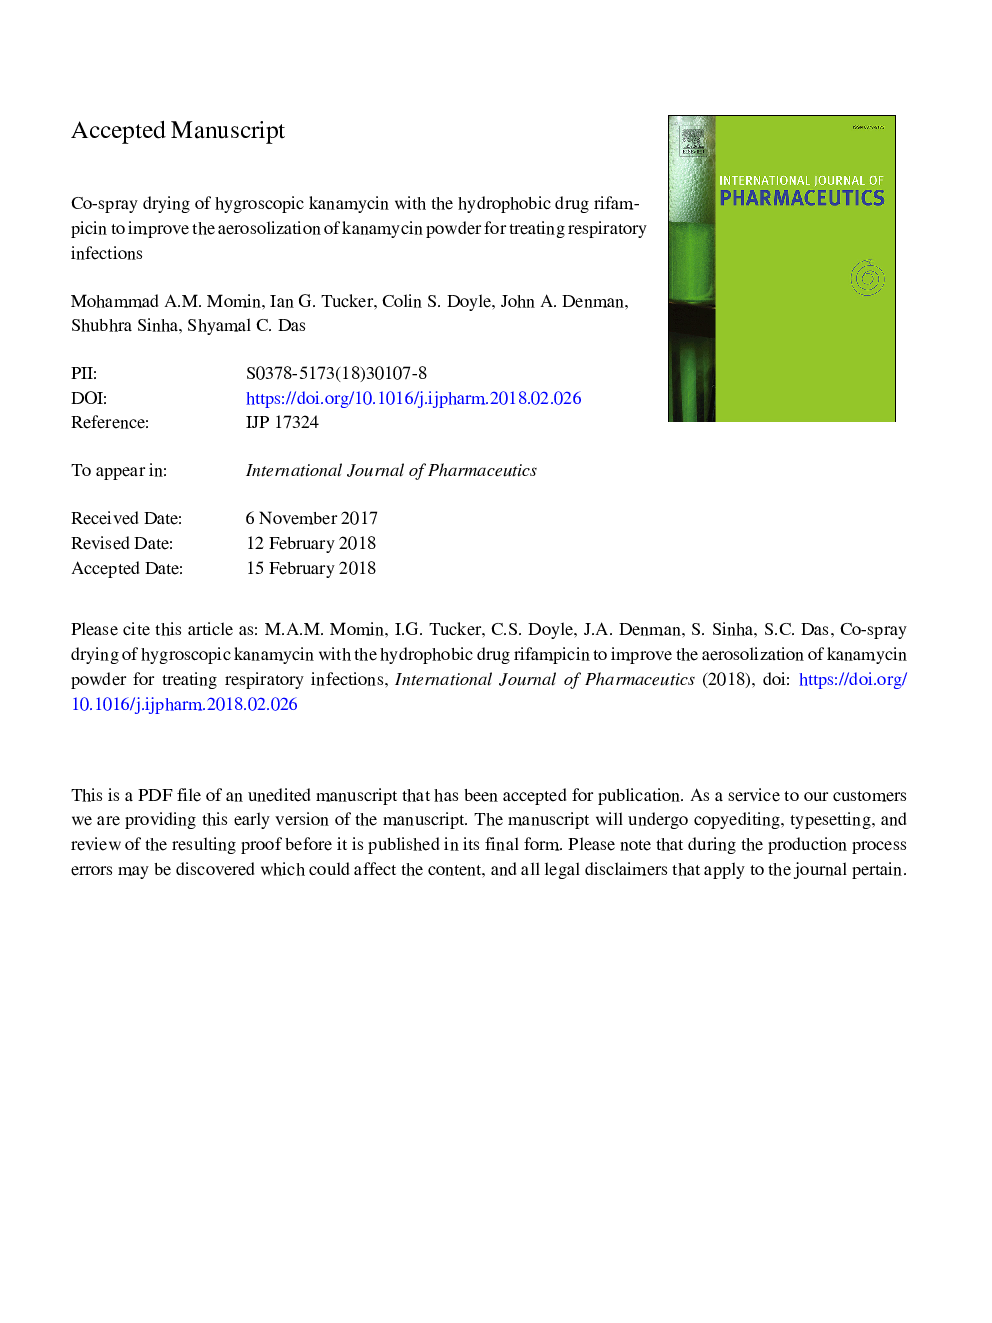 خشک کردن اسپری خشک کانامایسین هیدروژنی با ریفامپیسین داروی هیدروفوب برای بهبود پوسیدگی پودر کانامینسین برای درمان عفونت های تنفسی 